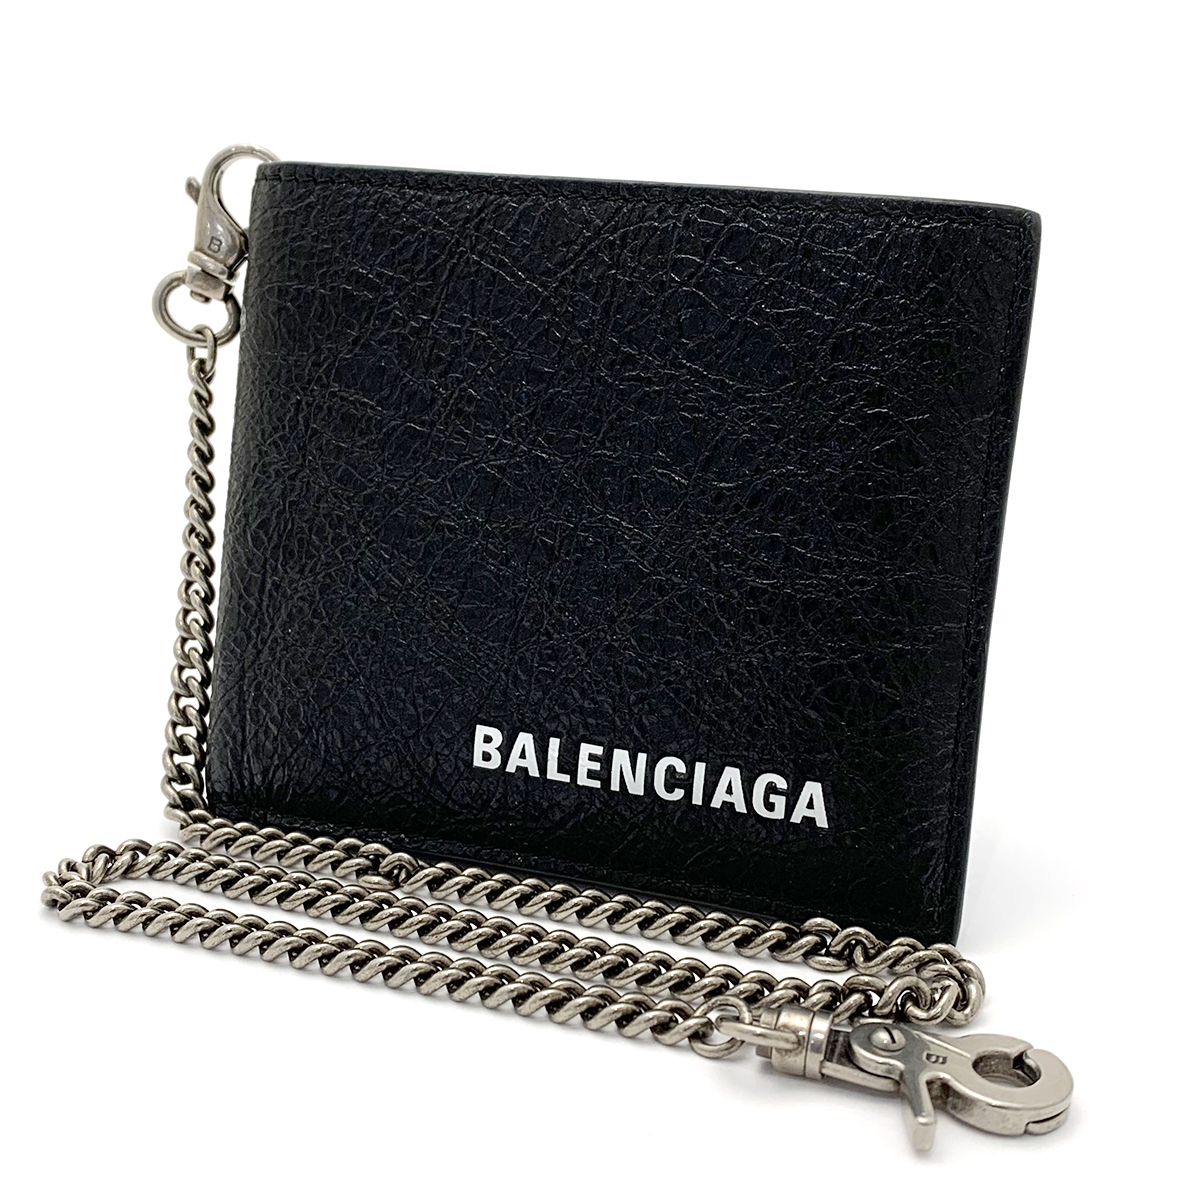 バレンシアガ(BALENCIAGA) 二つ折り財布 504933 レザー ブラック 